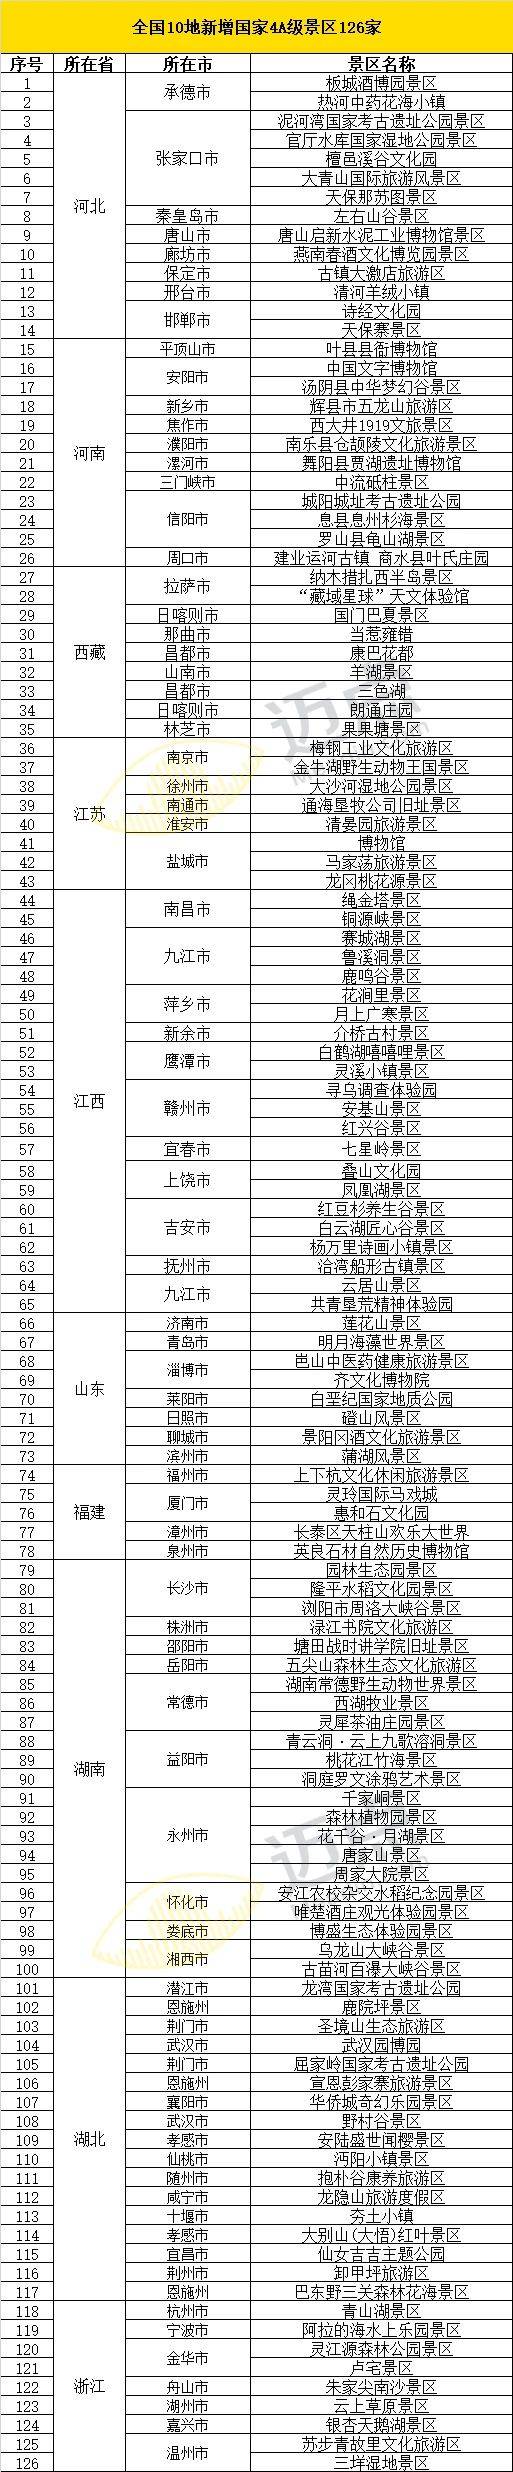 中国4A级景区名单图片